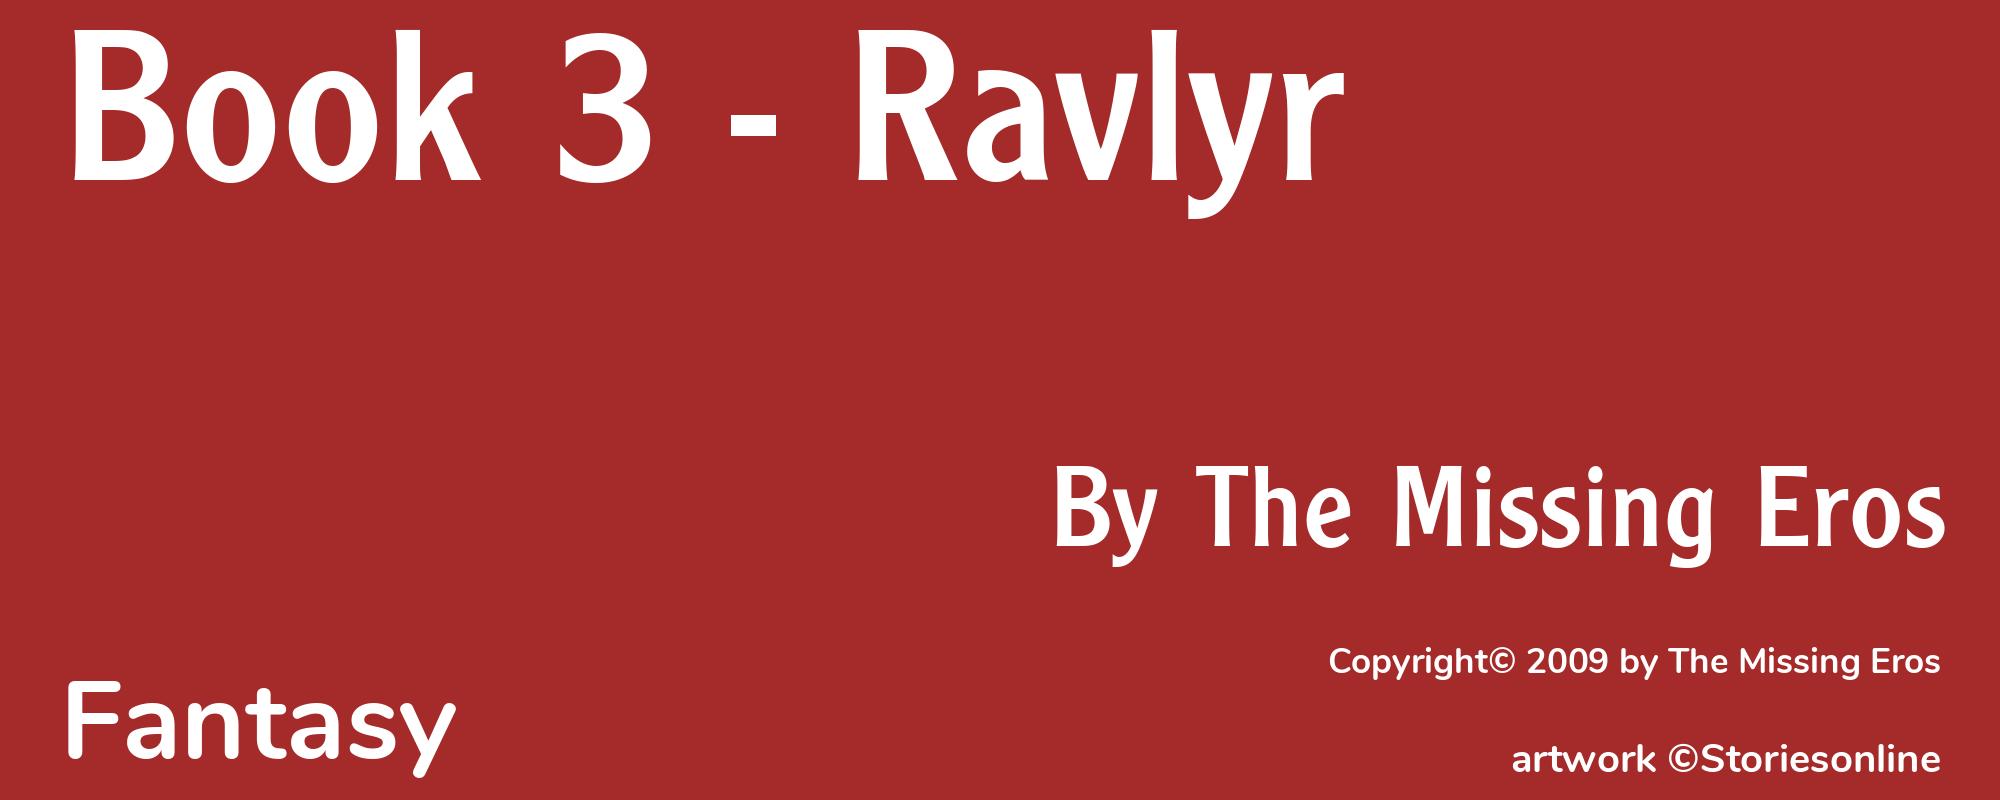 Book 3 - Ravlyr - Cover